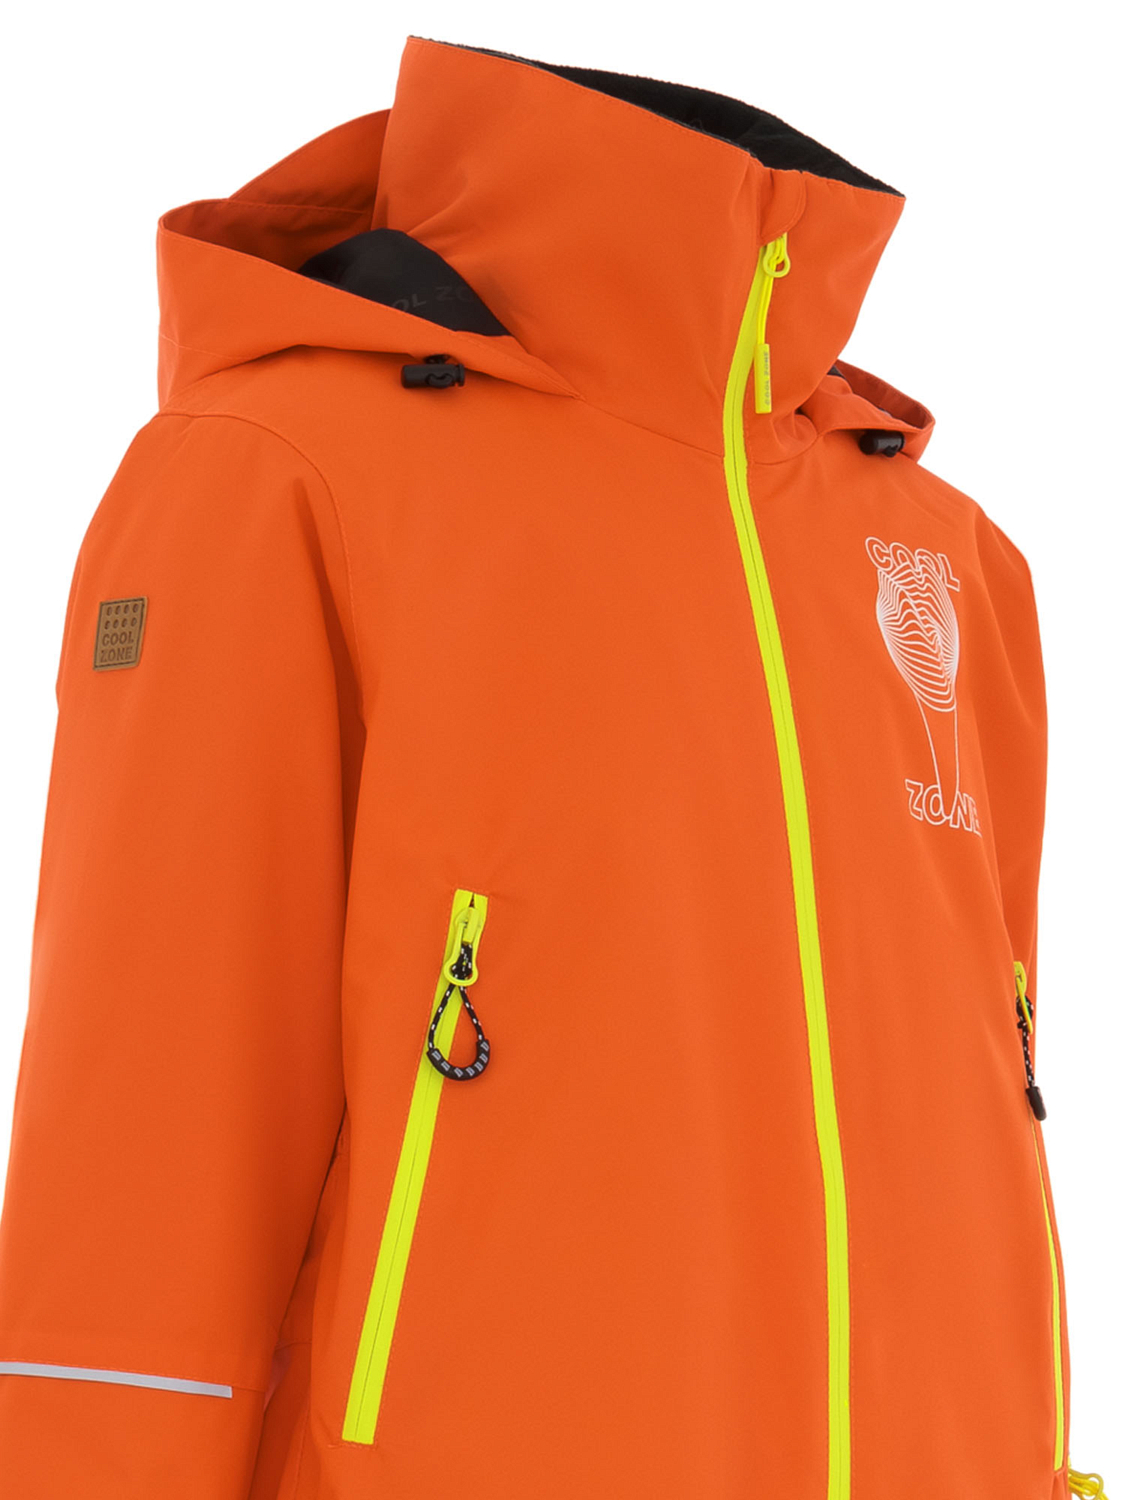 Комбинезон сноубордический детский COOL ZONE Pixel Оранжевый